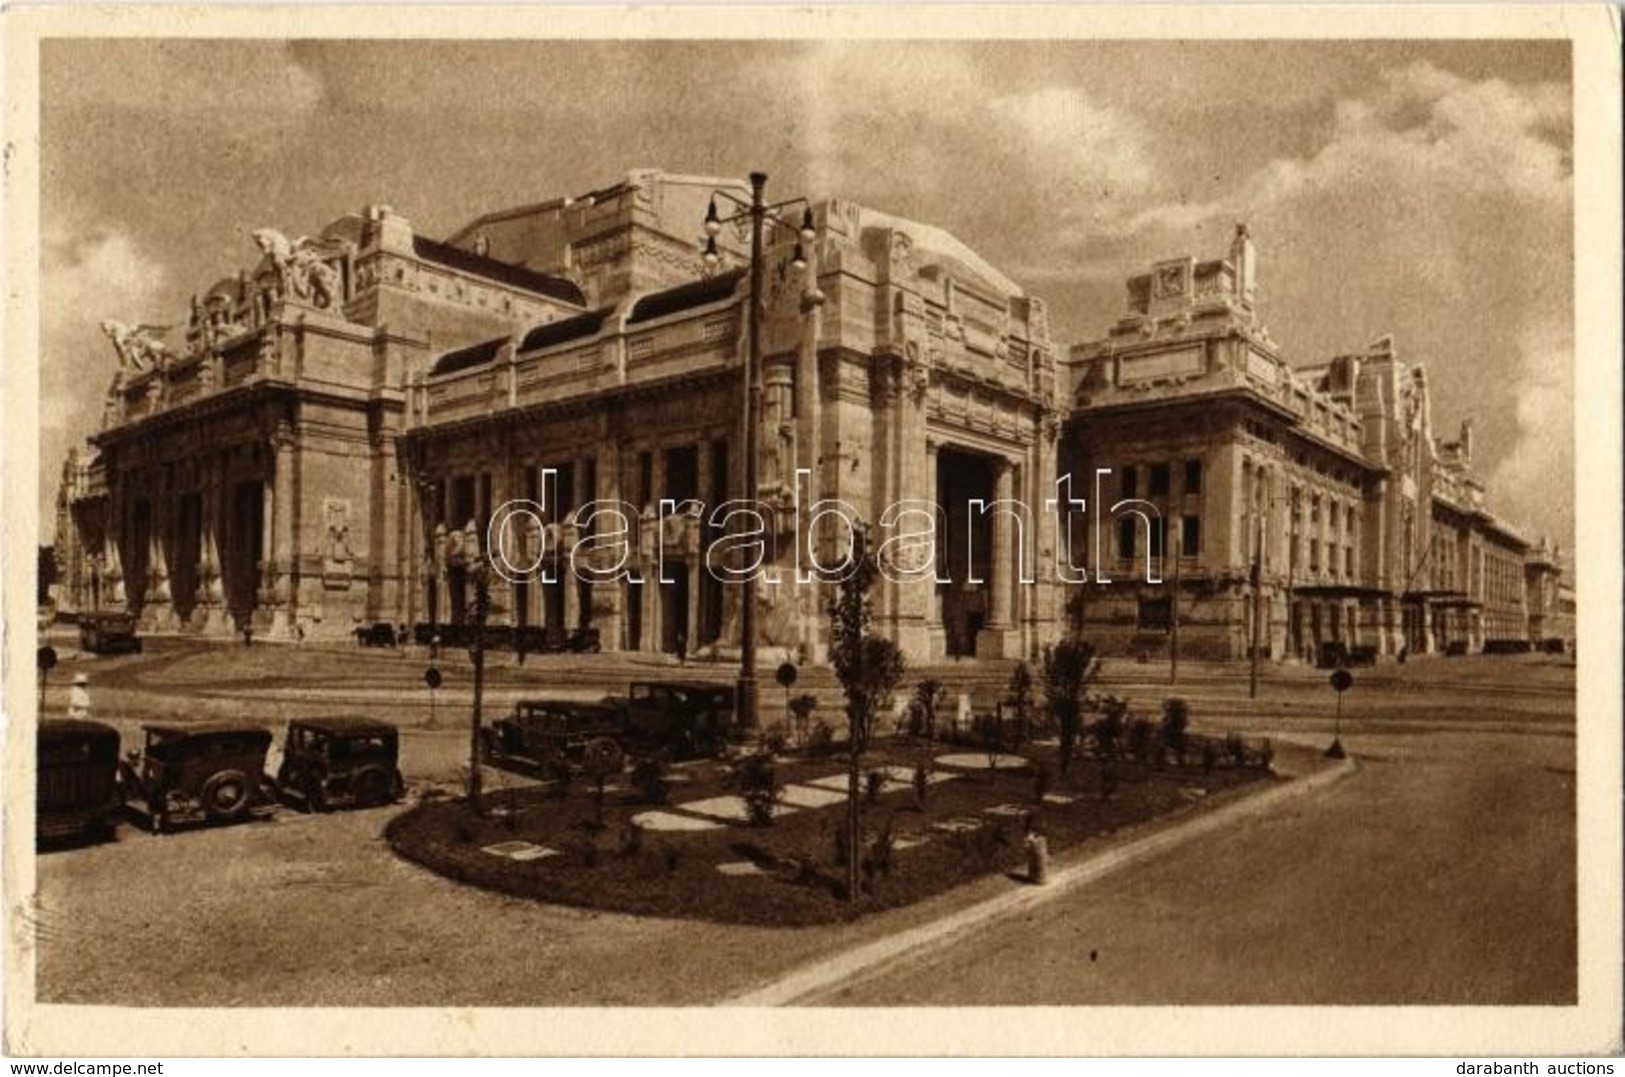 Milan, Milano; Stazione / Railway Station - 2 Pre-1945 Postcards - Non Classificati